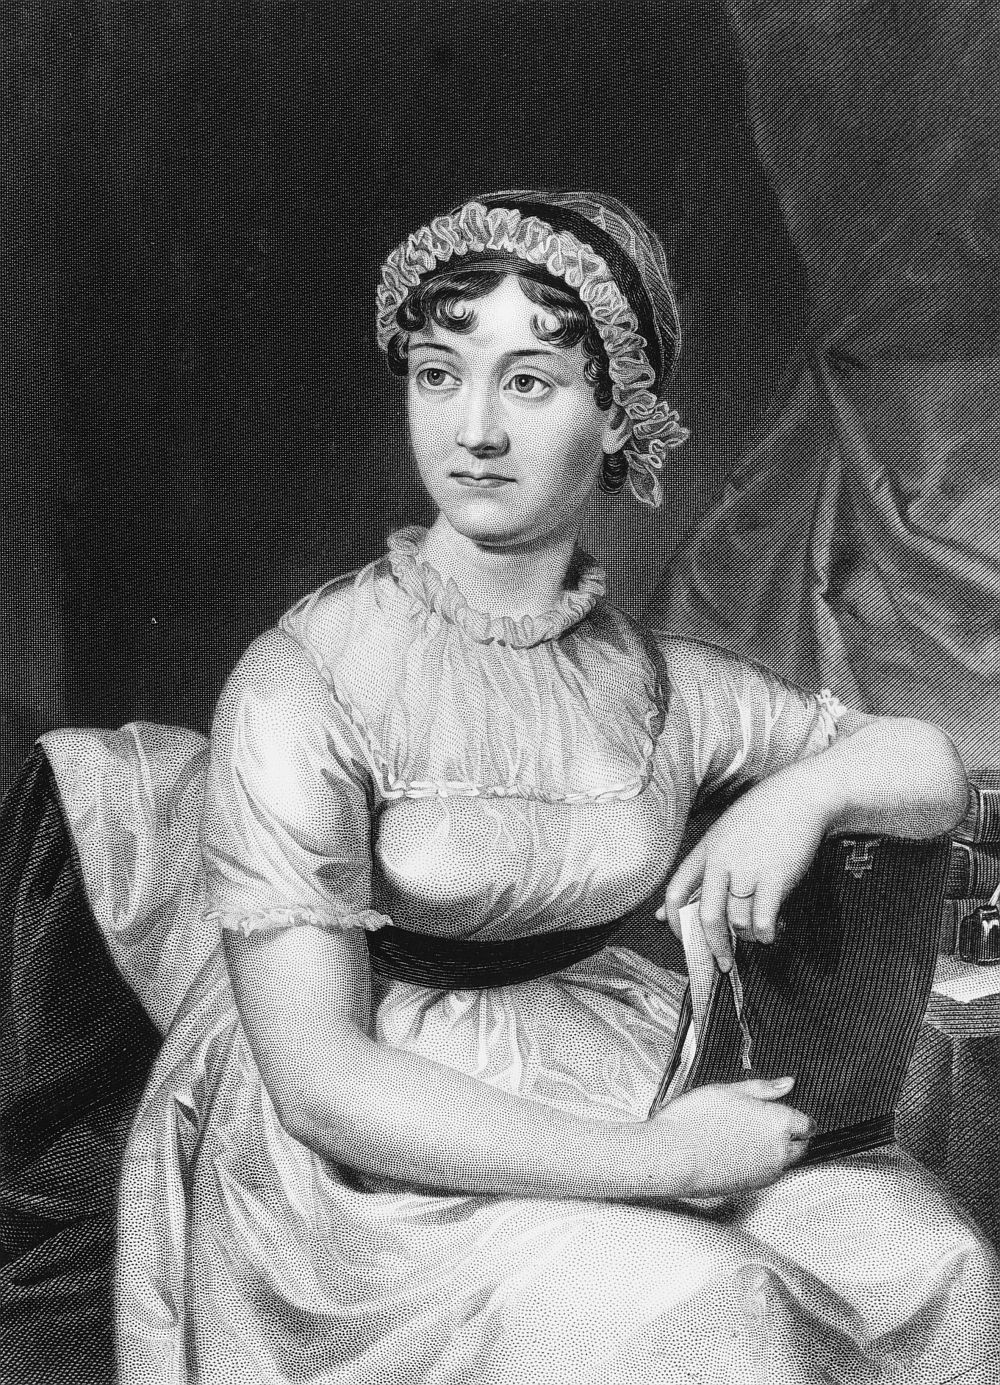 <strong>13. Джейн Остин (1775 – 1817) </strong><br>
<br>
Джейн Остин е един от най-ярките творци в английската литература от ХVІІІ в. За личността ѝ се знае сравнително малко, предимно от спомени на семейството и от оцелялата кореспонденция със сестра ѝ Касандра.